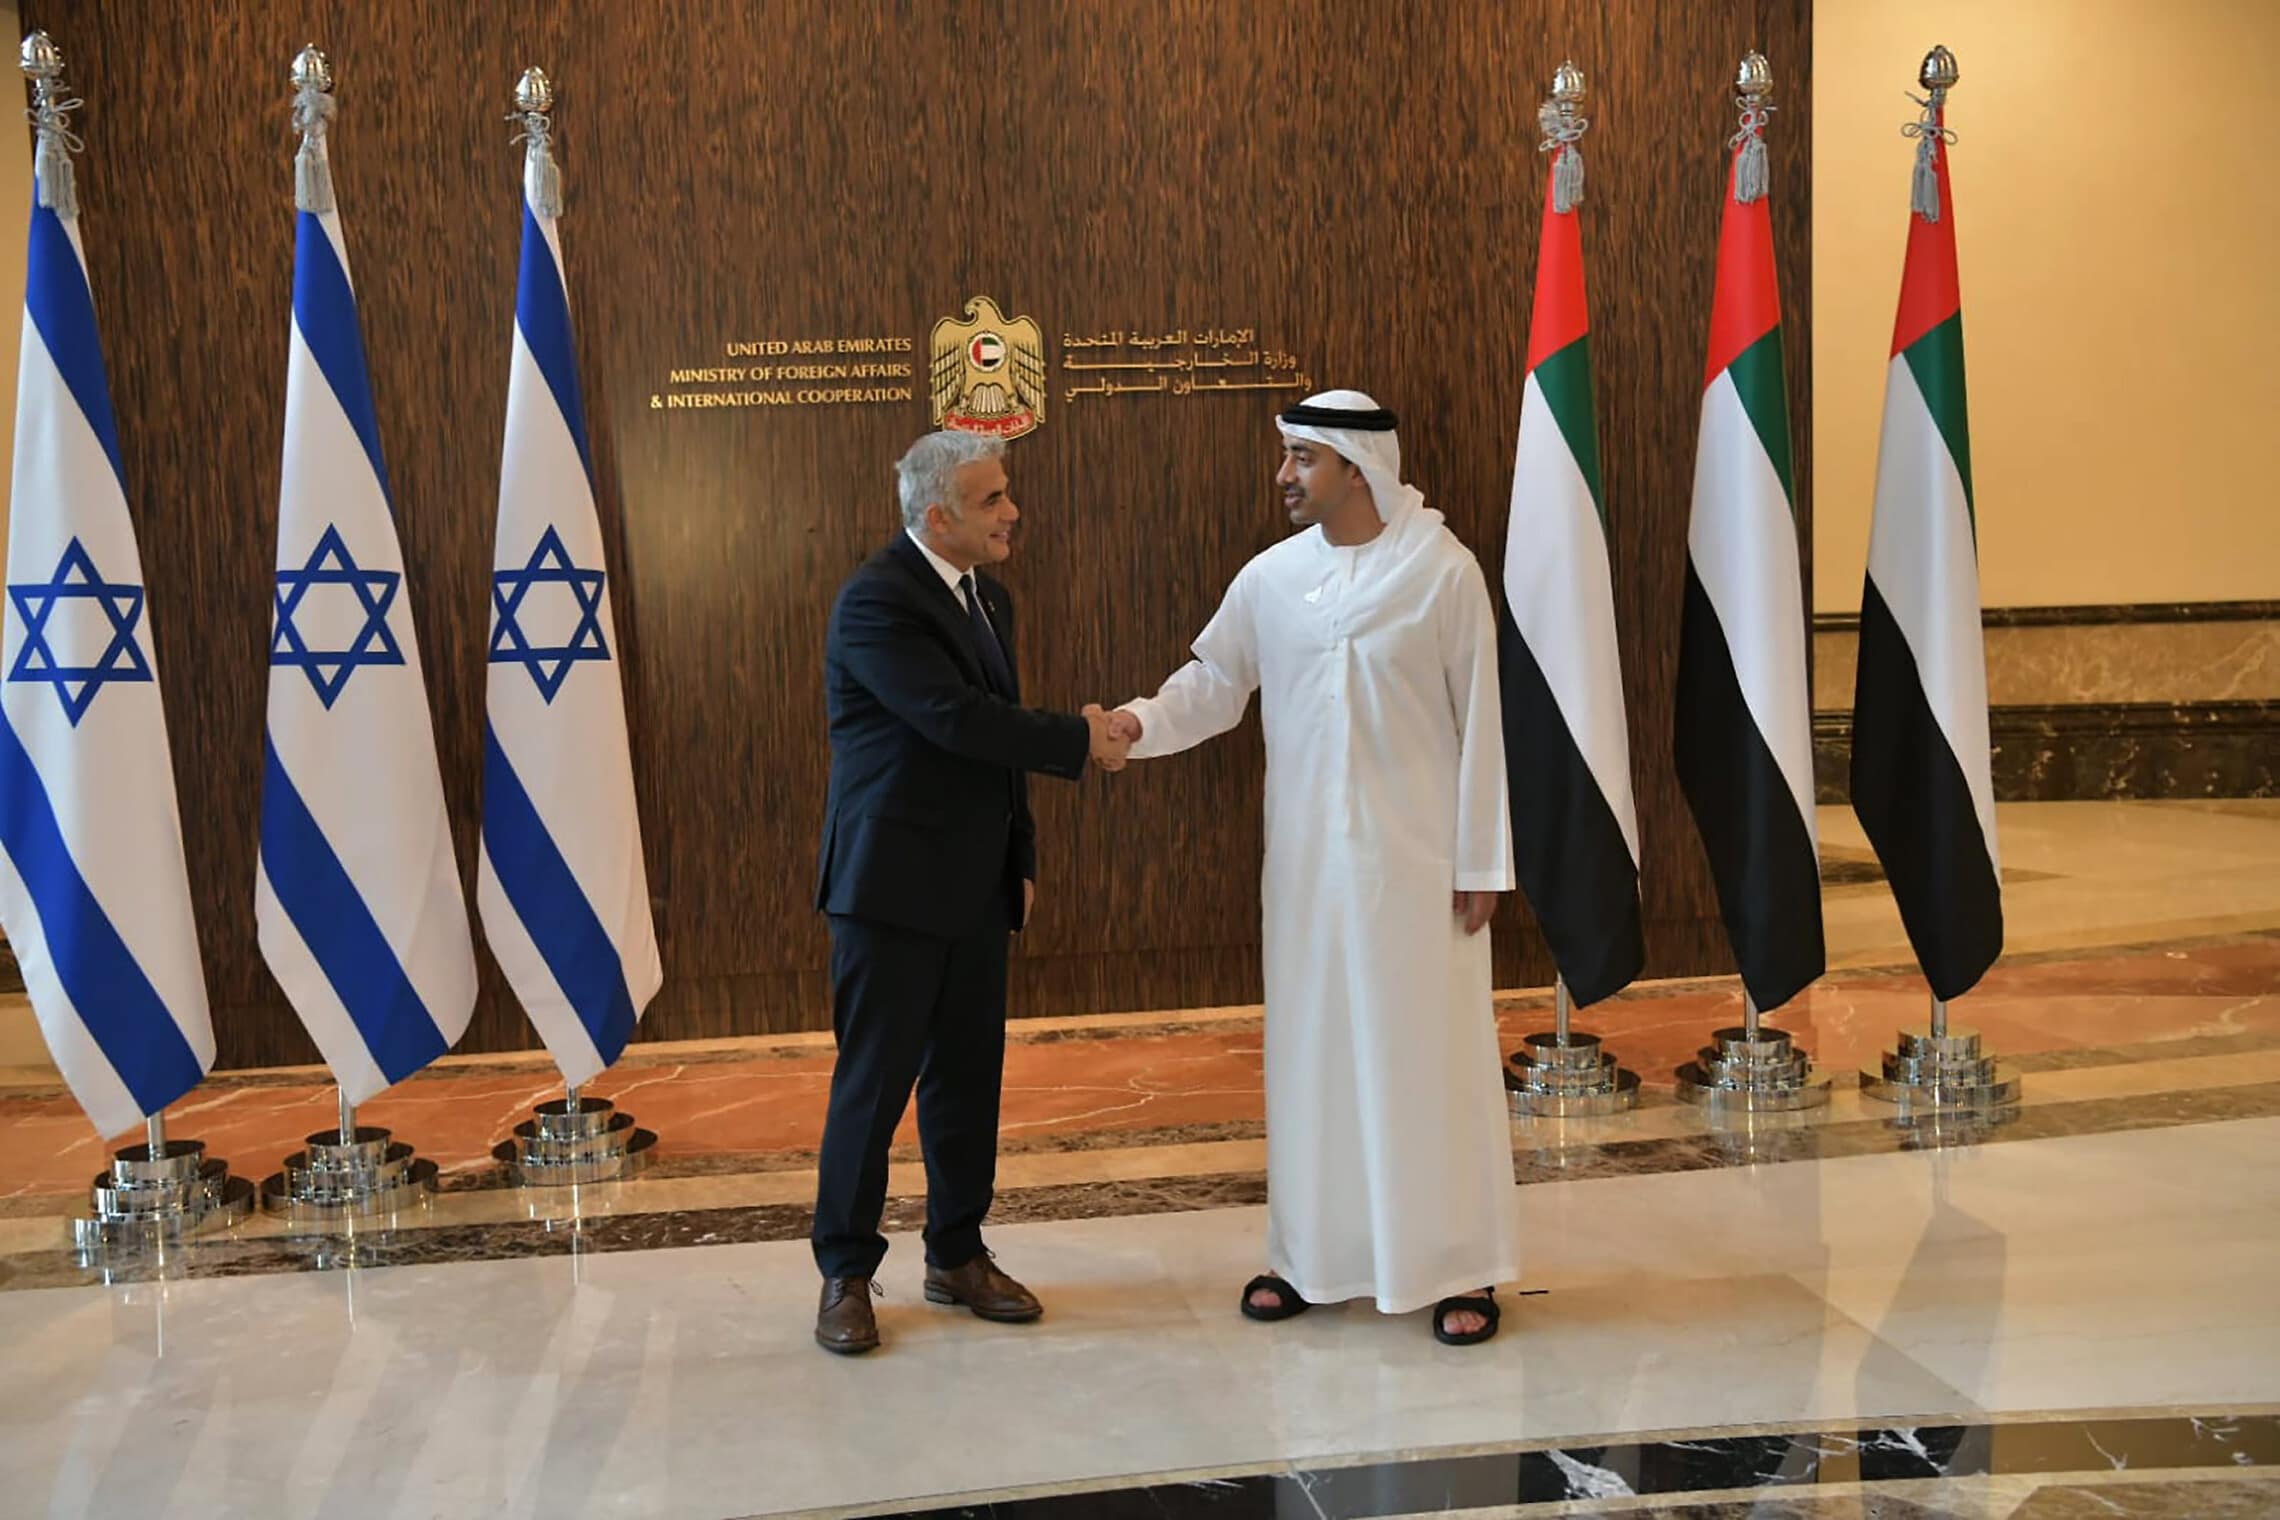 שר החוץ יאיר לפיד פוגש את עבדאללה בן זאיד אל נהיאן באבו דאבי, 30.6.2021 (צילום: שלומי אמסלם, לע